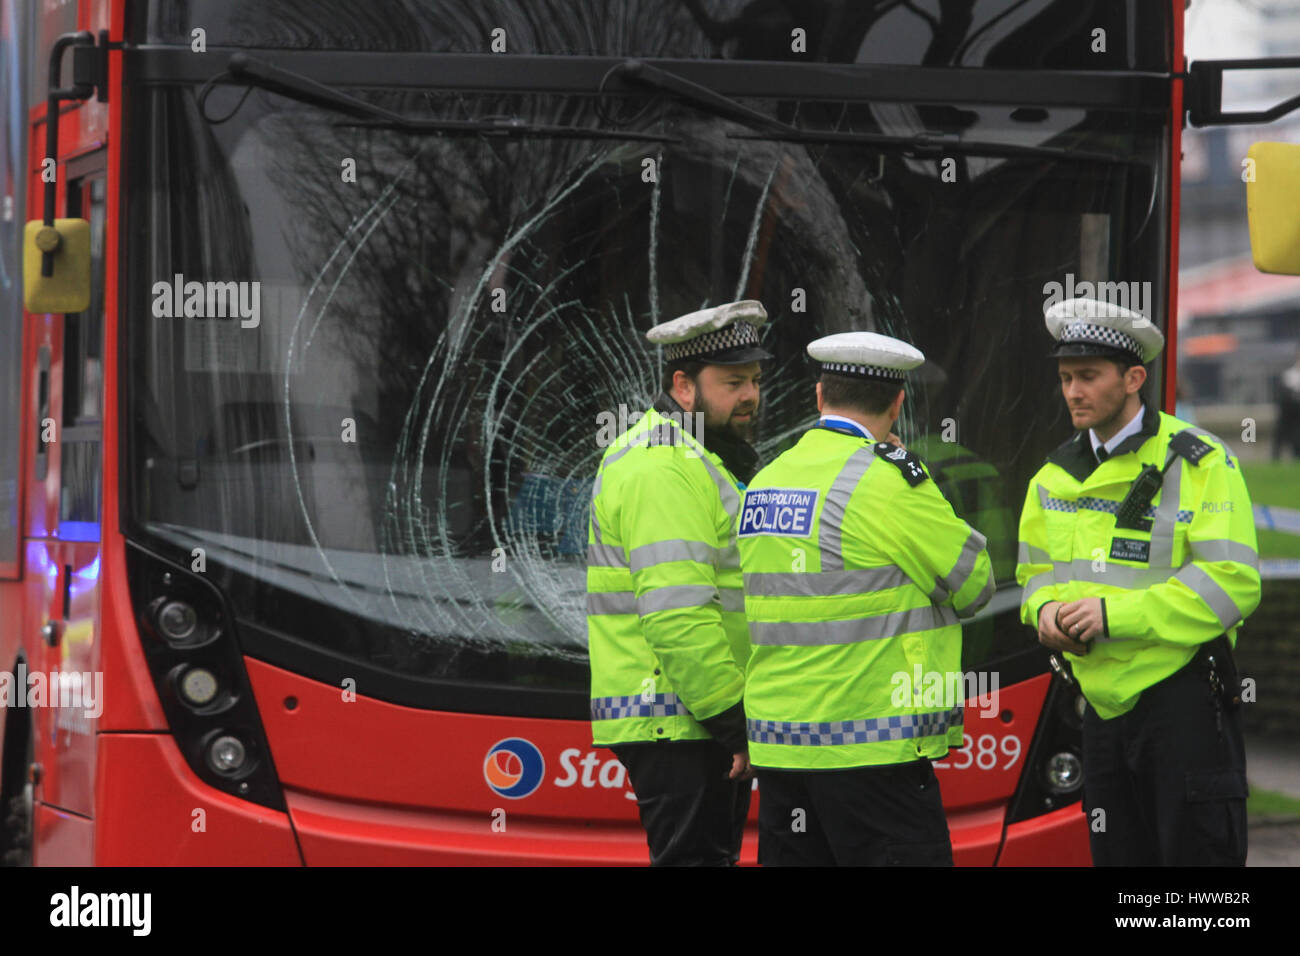 Londres, Royaume-Uni. Mar 23, 2017. Un piéton a été heurté par un bus se déplaçant sur Lambeth Road Crédit : Westminster amer ghazzal/Alamy Live News Banque D'Images